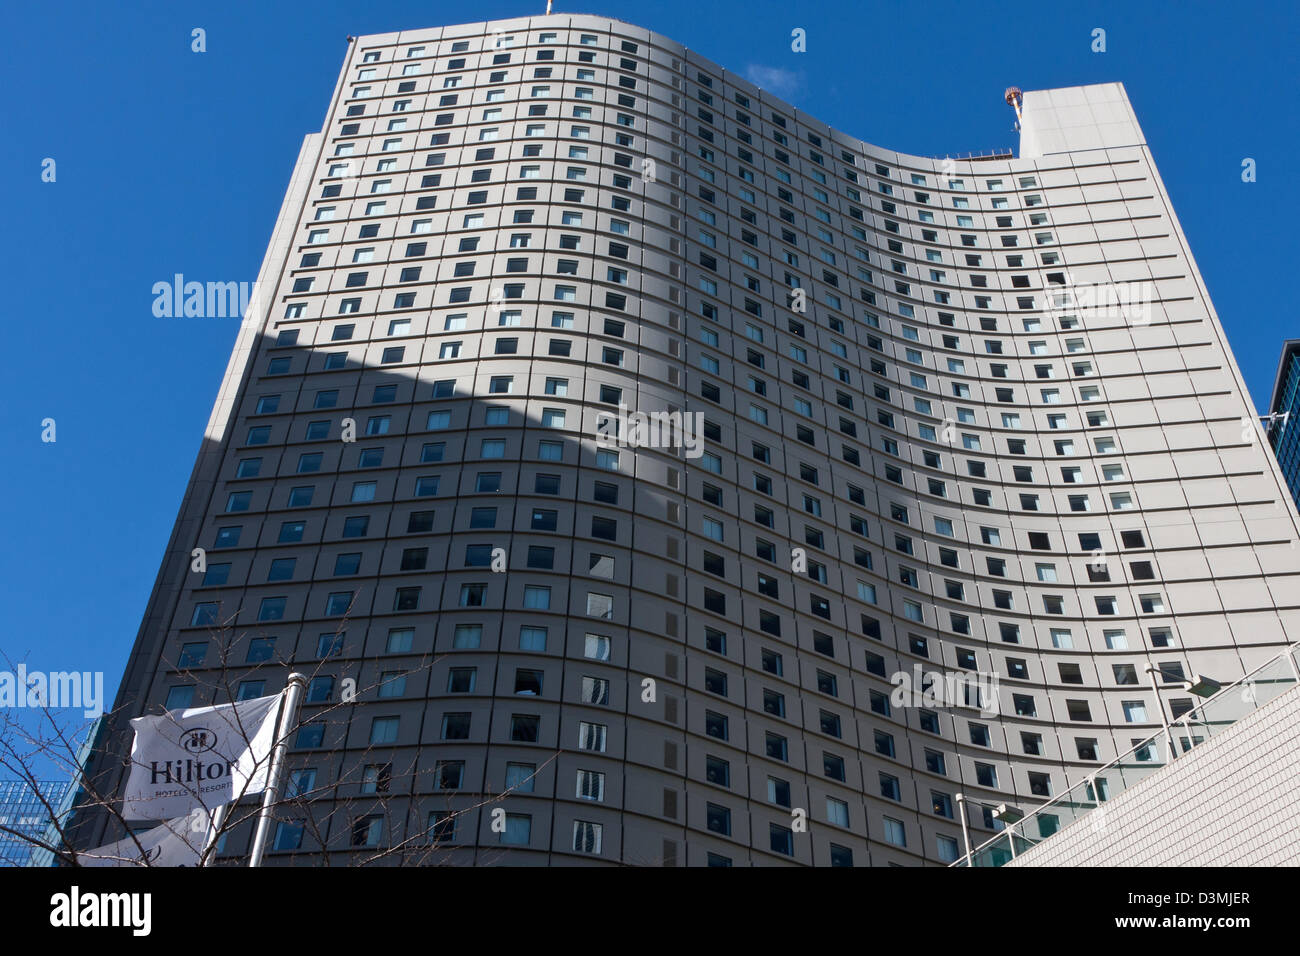 L'architecture incurvée de l'hôtel Hilton à Shinjuku, Tokyo Japon. Banque D'Images